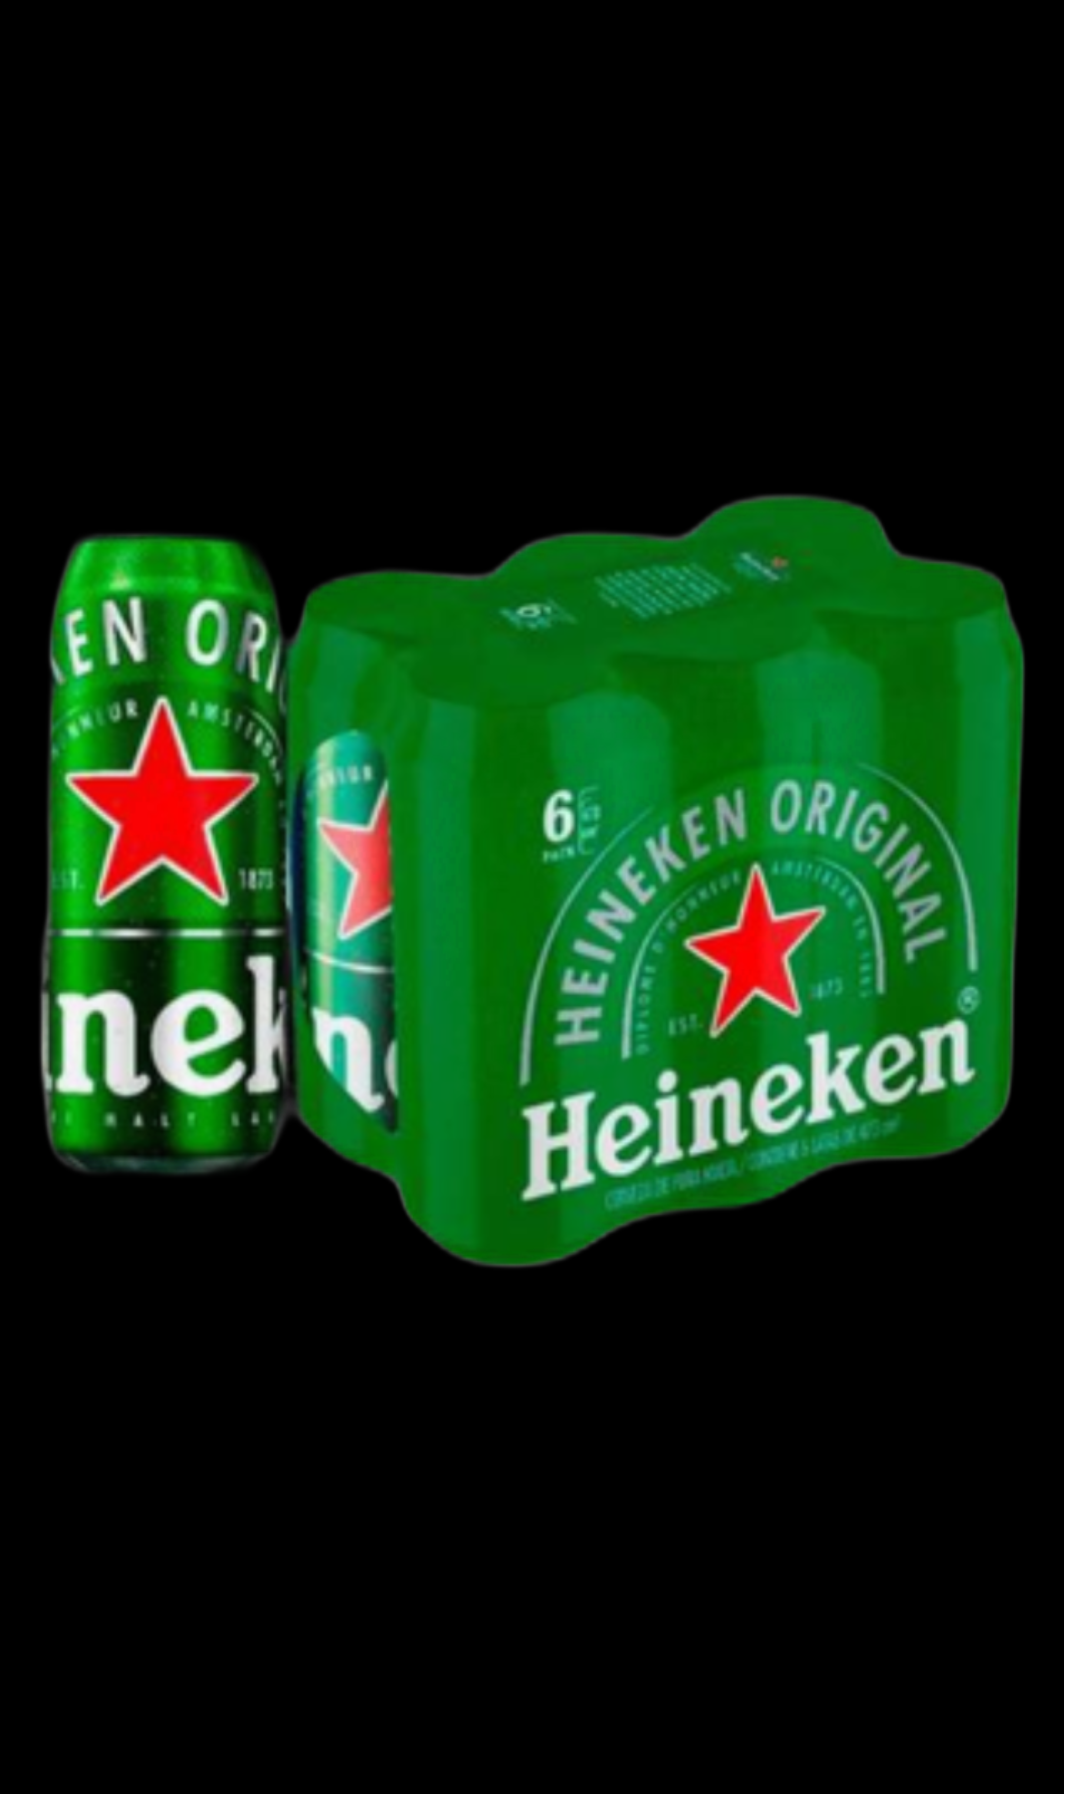 Six Pack Heineken En Córdoba 1975